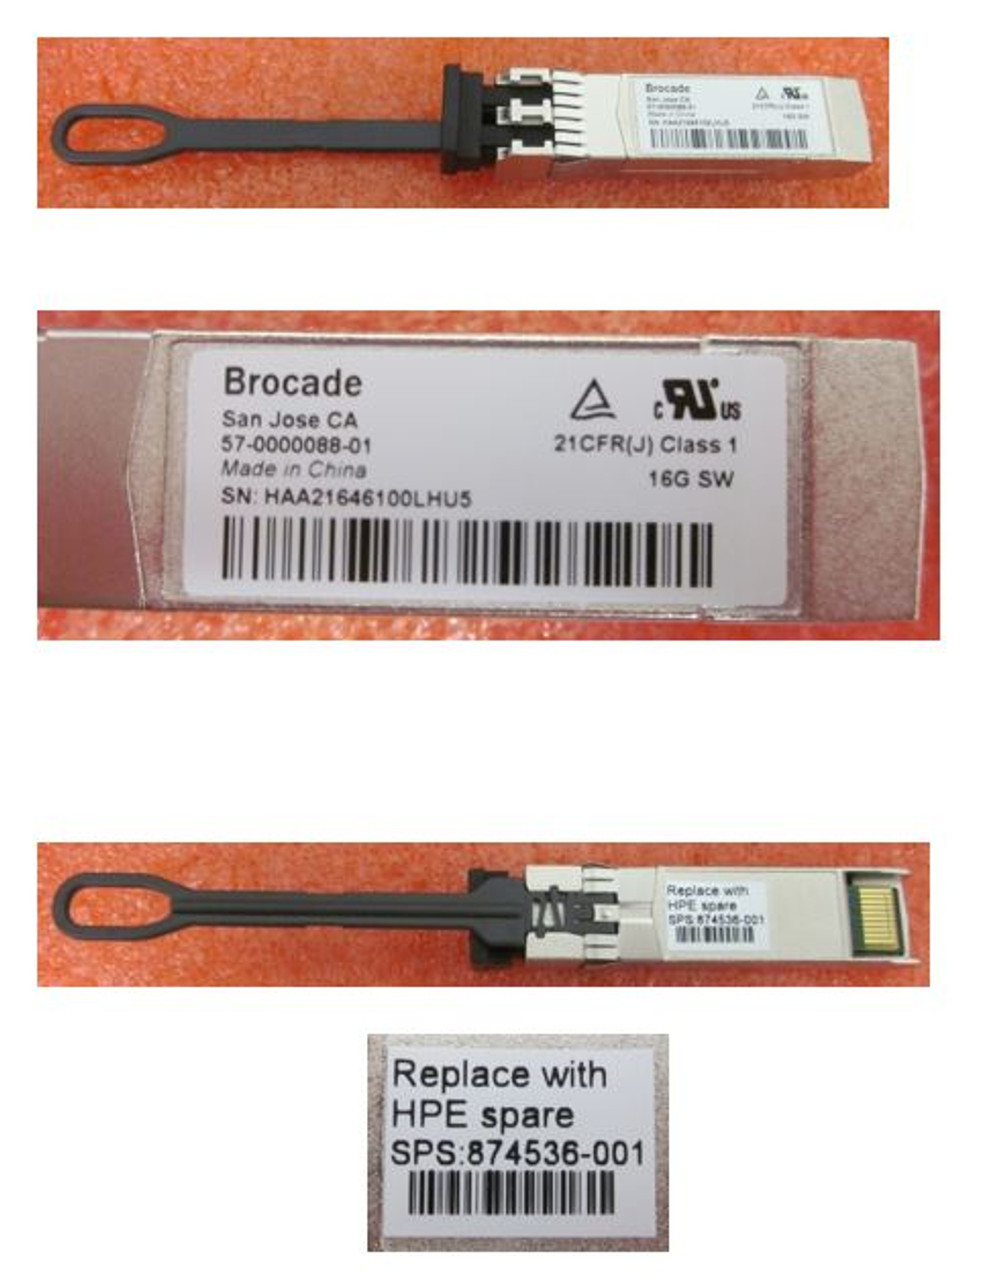 SPS-BRCD 16Gb SFP+ SW 1-pack XCVR - 874536-001